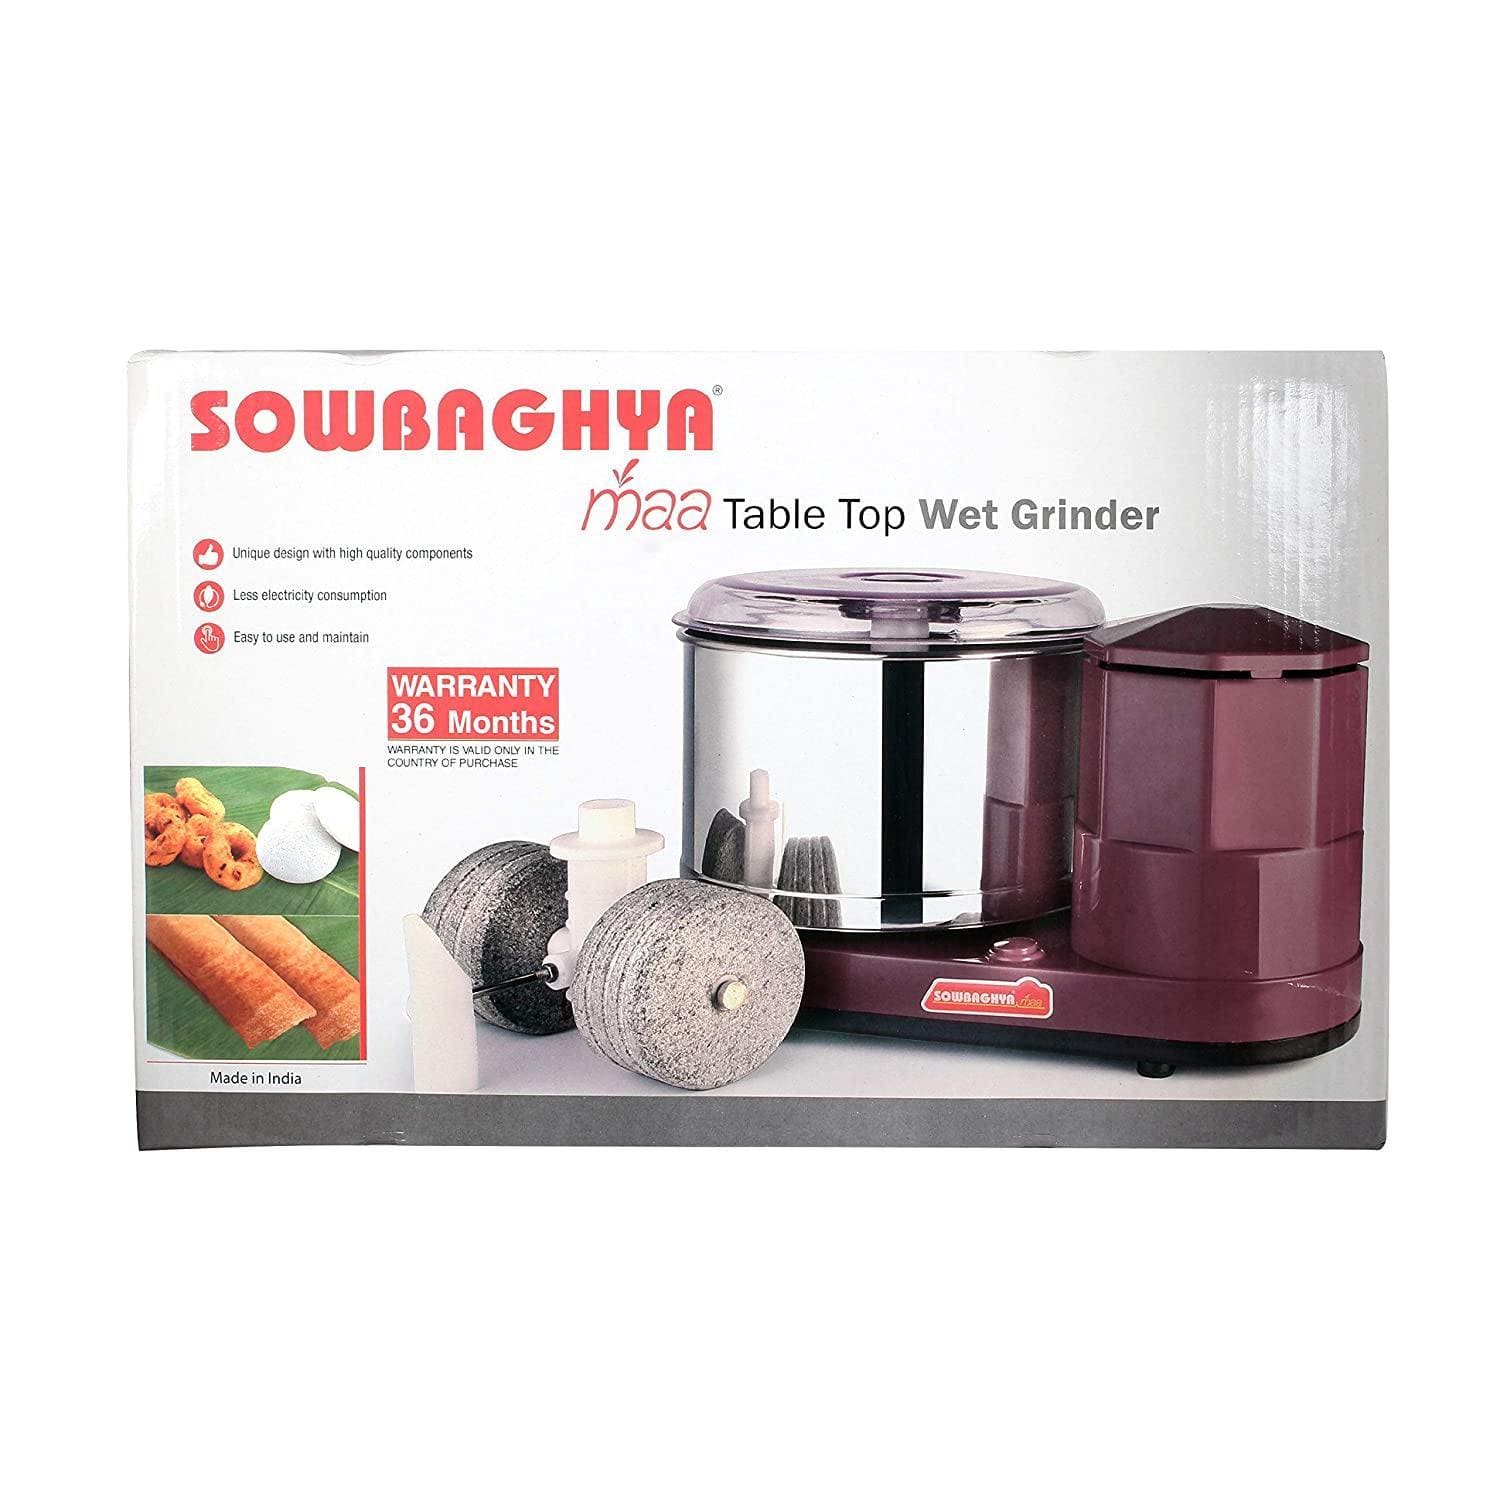 SOWBAGHYA 2 Litre MAA Wet Grinder-Home & Kitchen Appliances-dealsplant